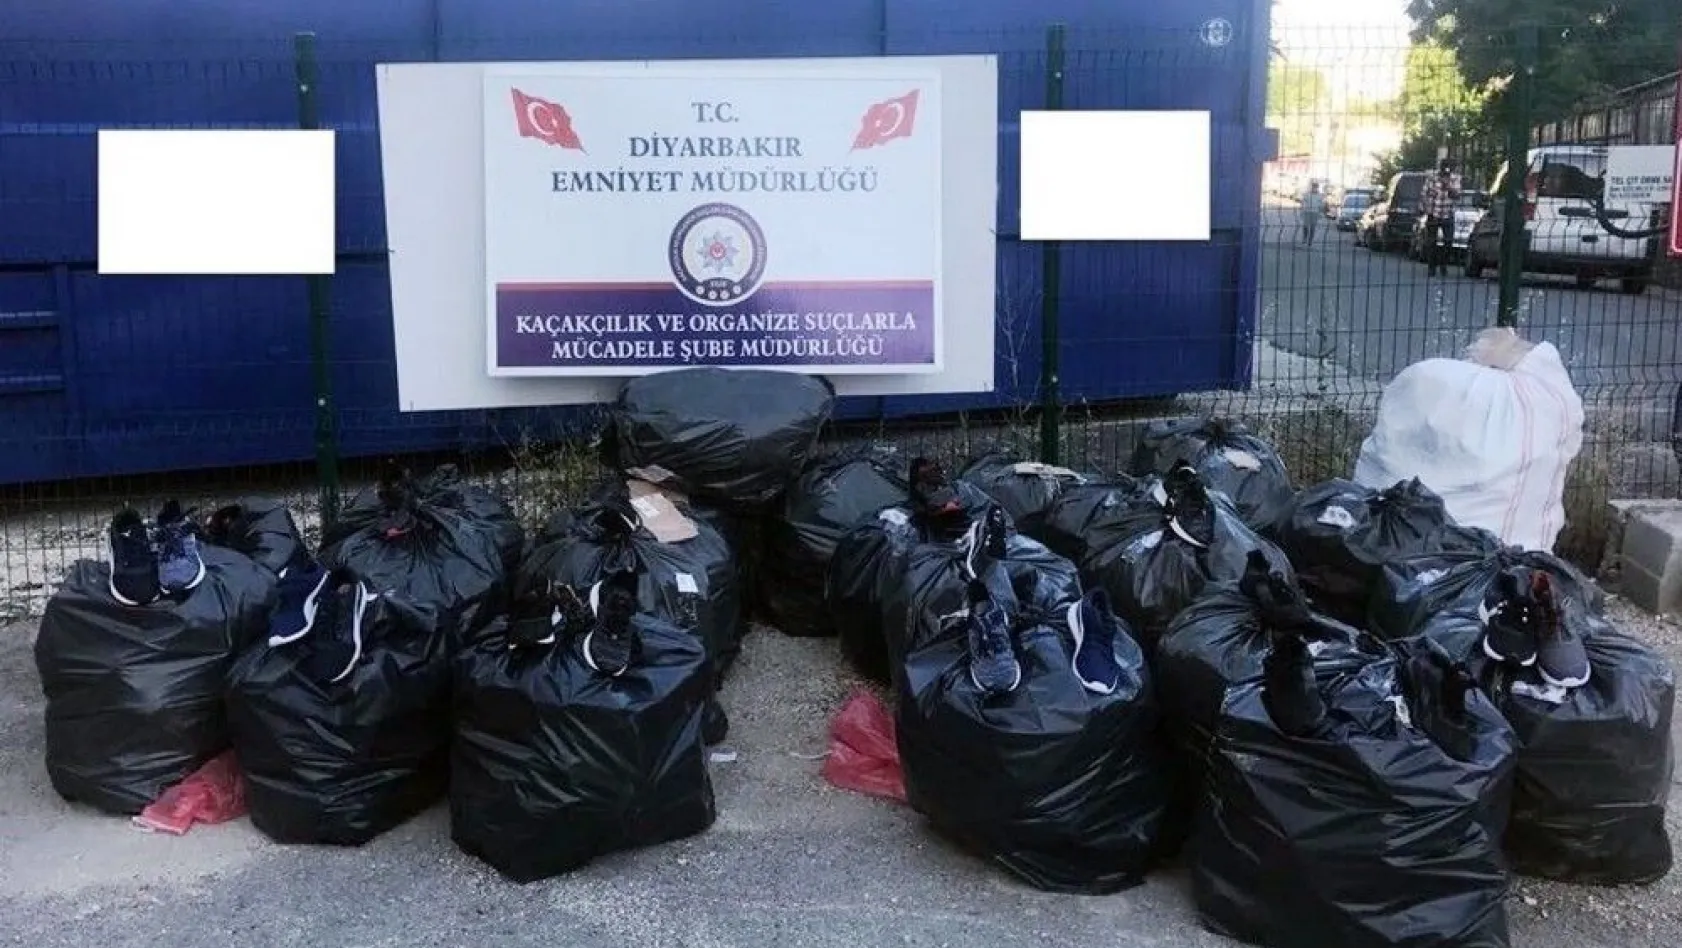 Diyarbakır'da 3 bin 814 gümrük kaçağı ayakkabı ele geçirildi
